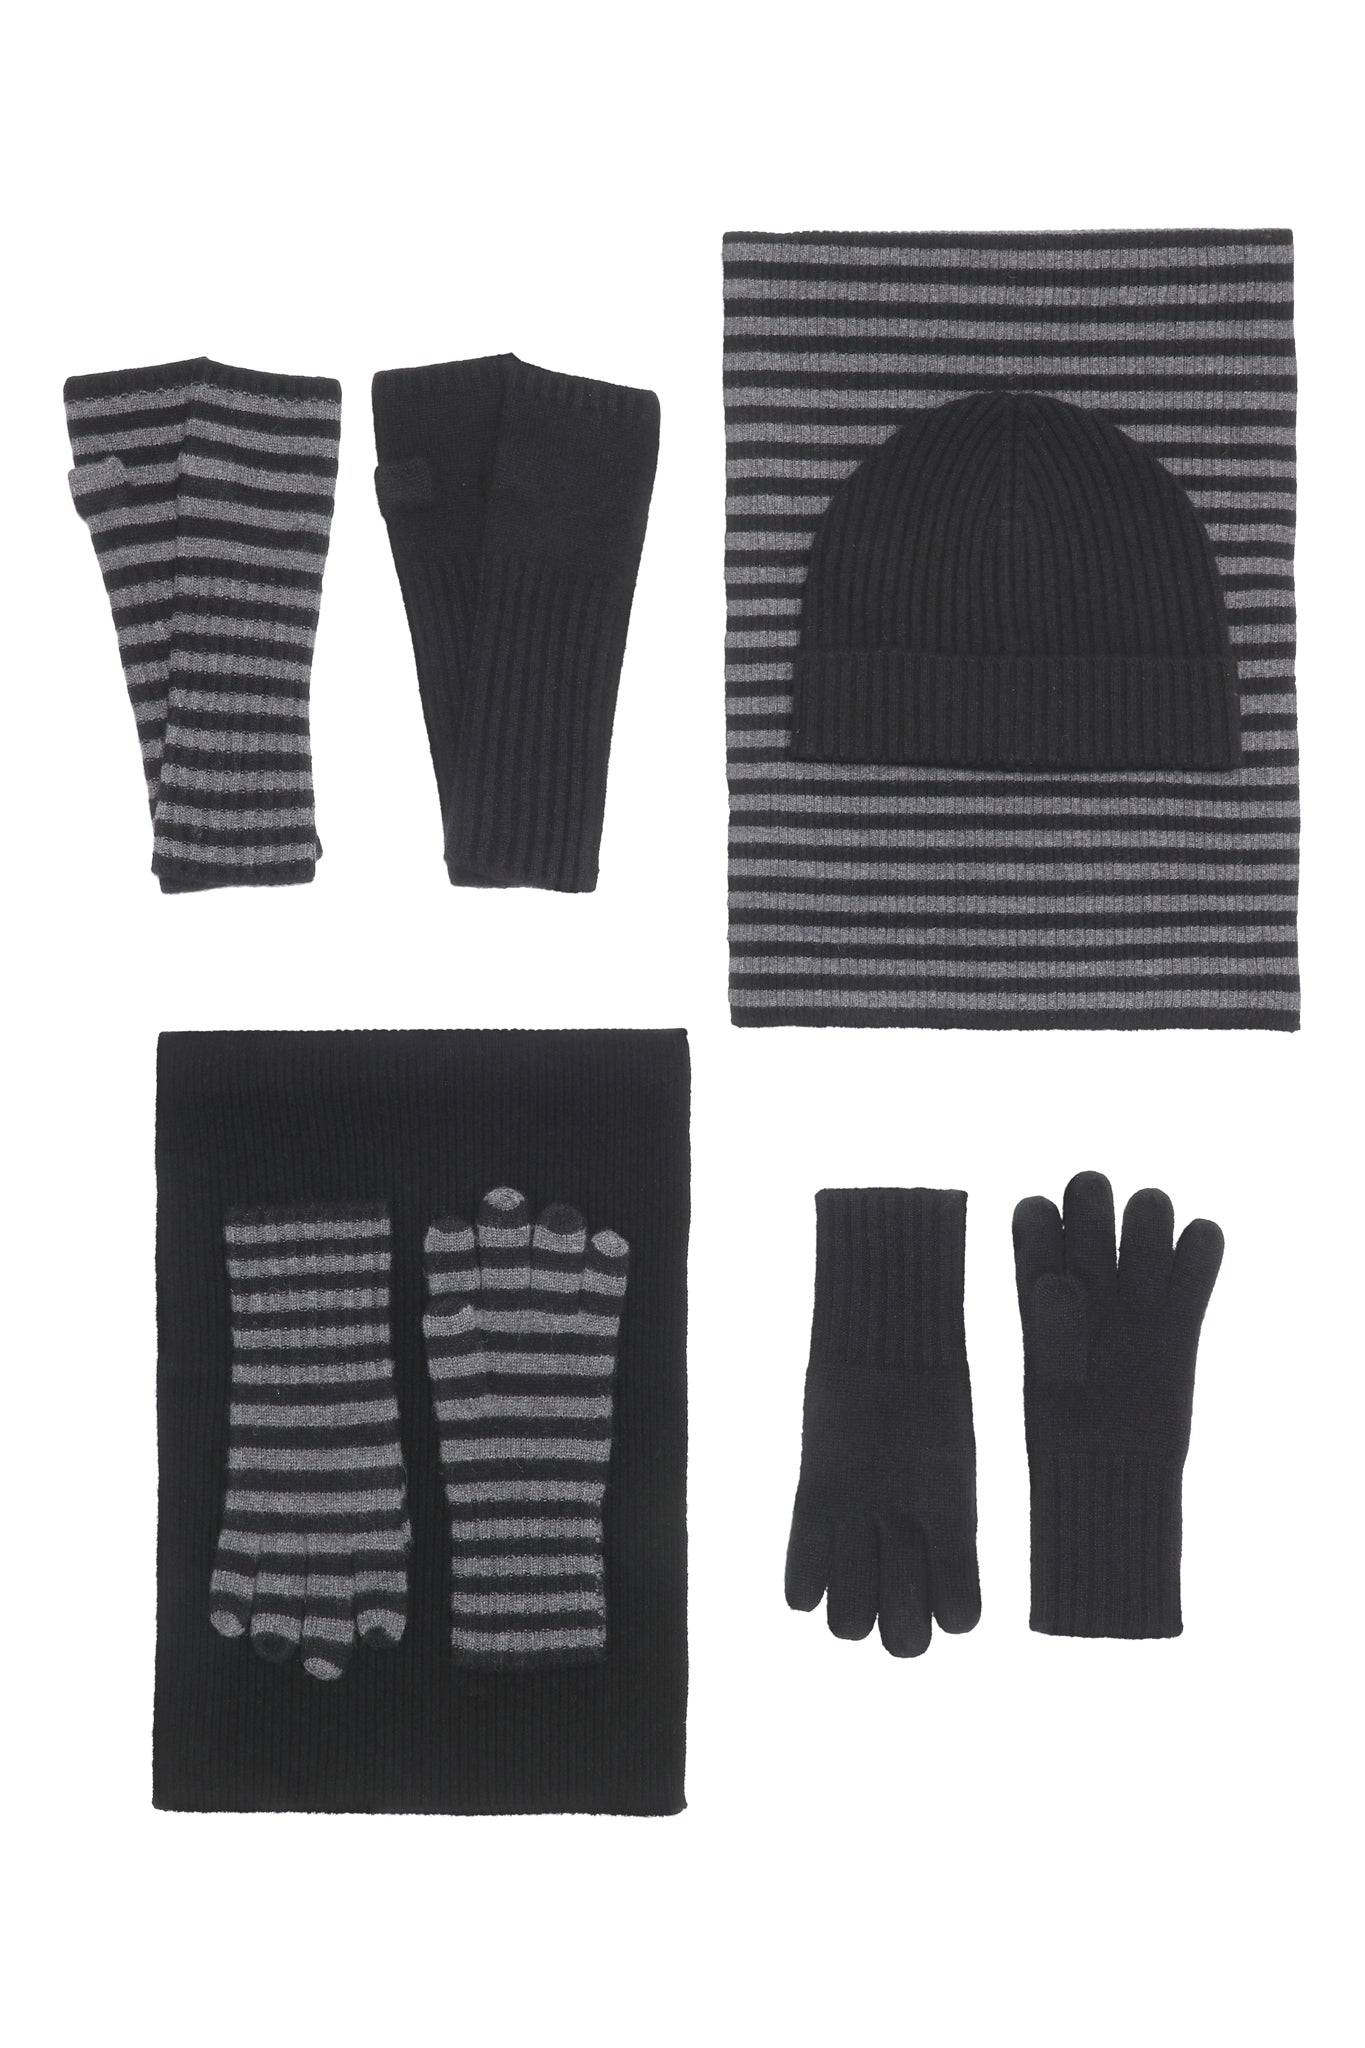 Robin - Handsker med striber i strikket cashmere - Sort og Mørkegrå